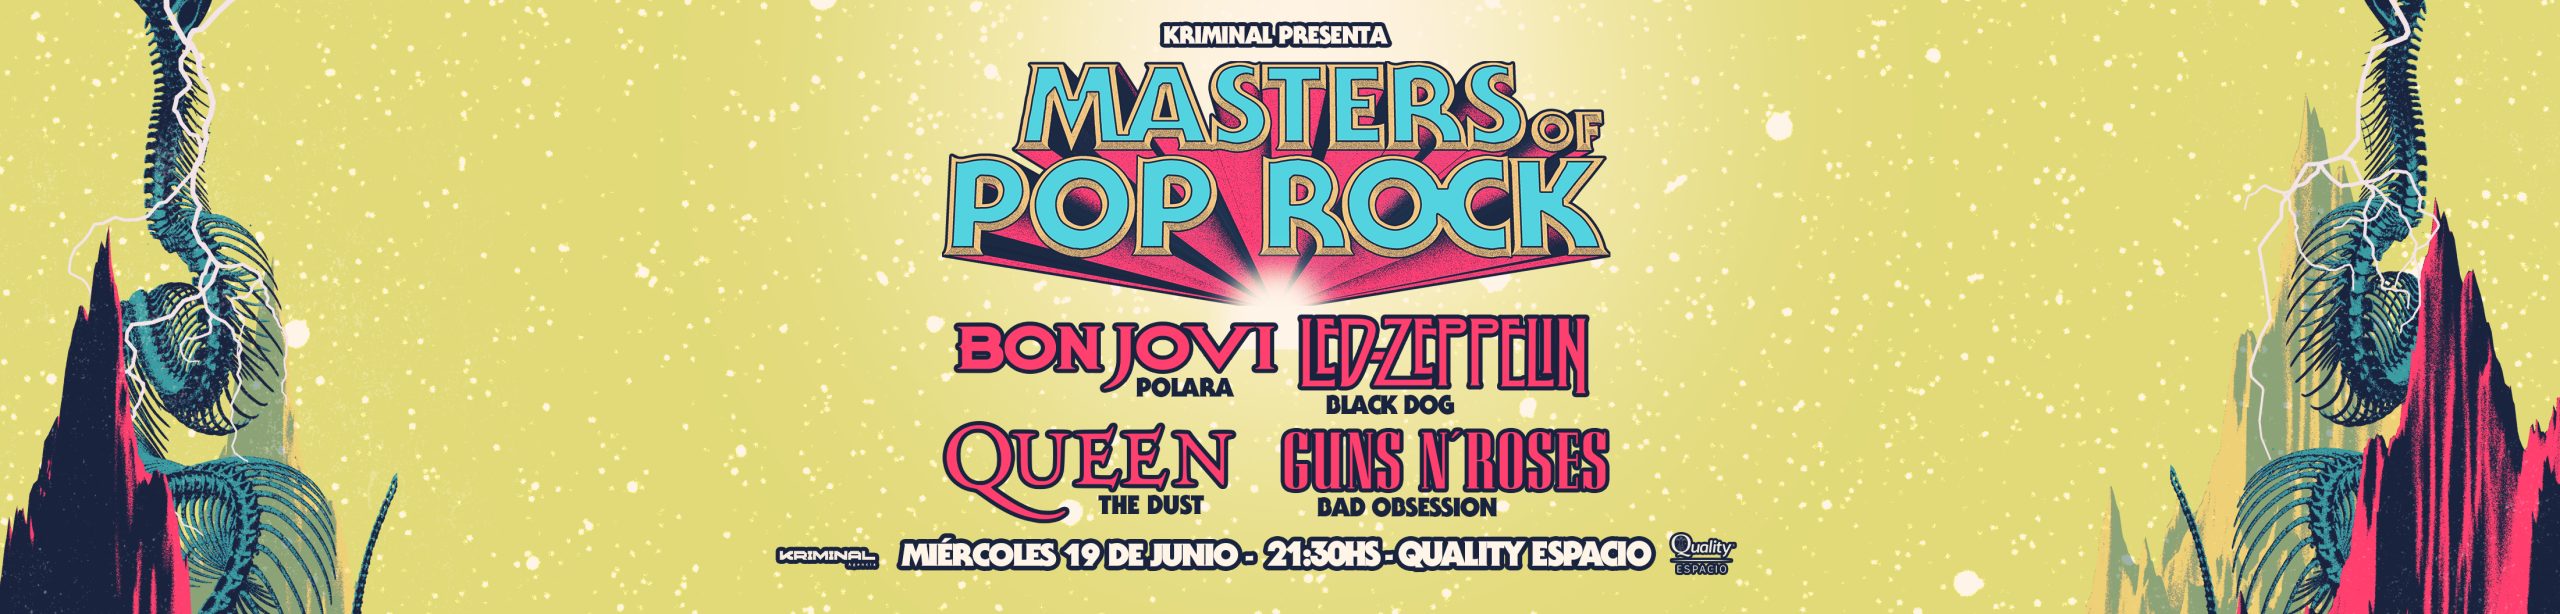 Quality Masters of Pop Rock 190624 – Portada post de venta 1583×380